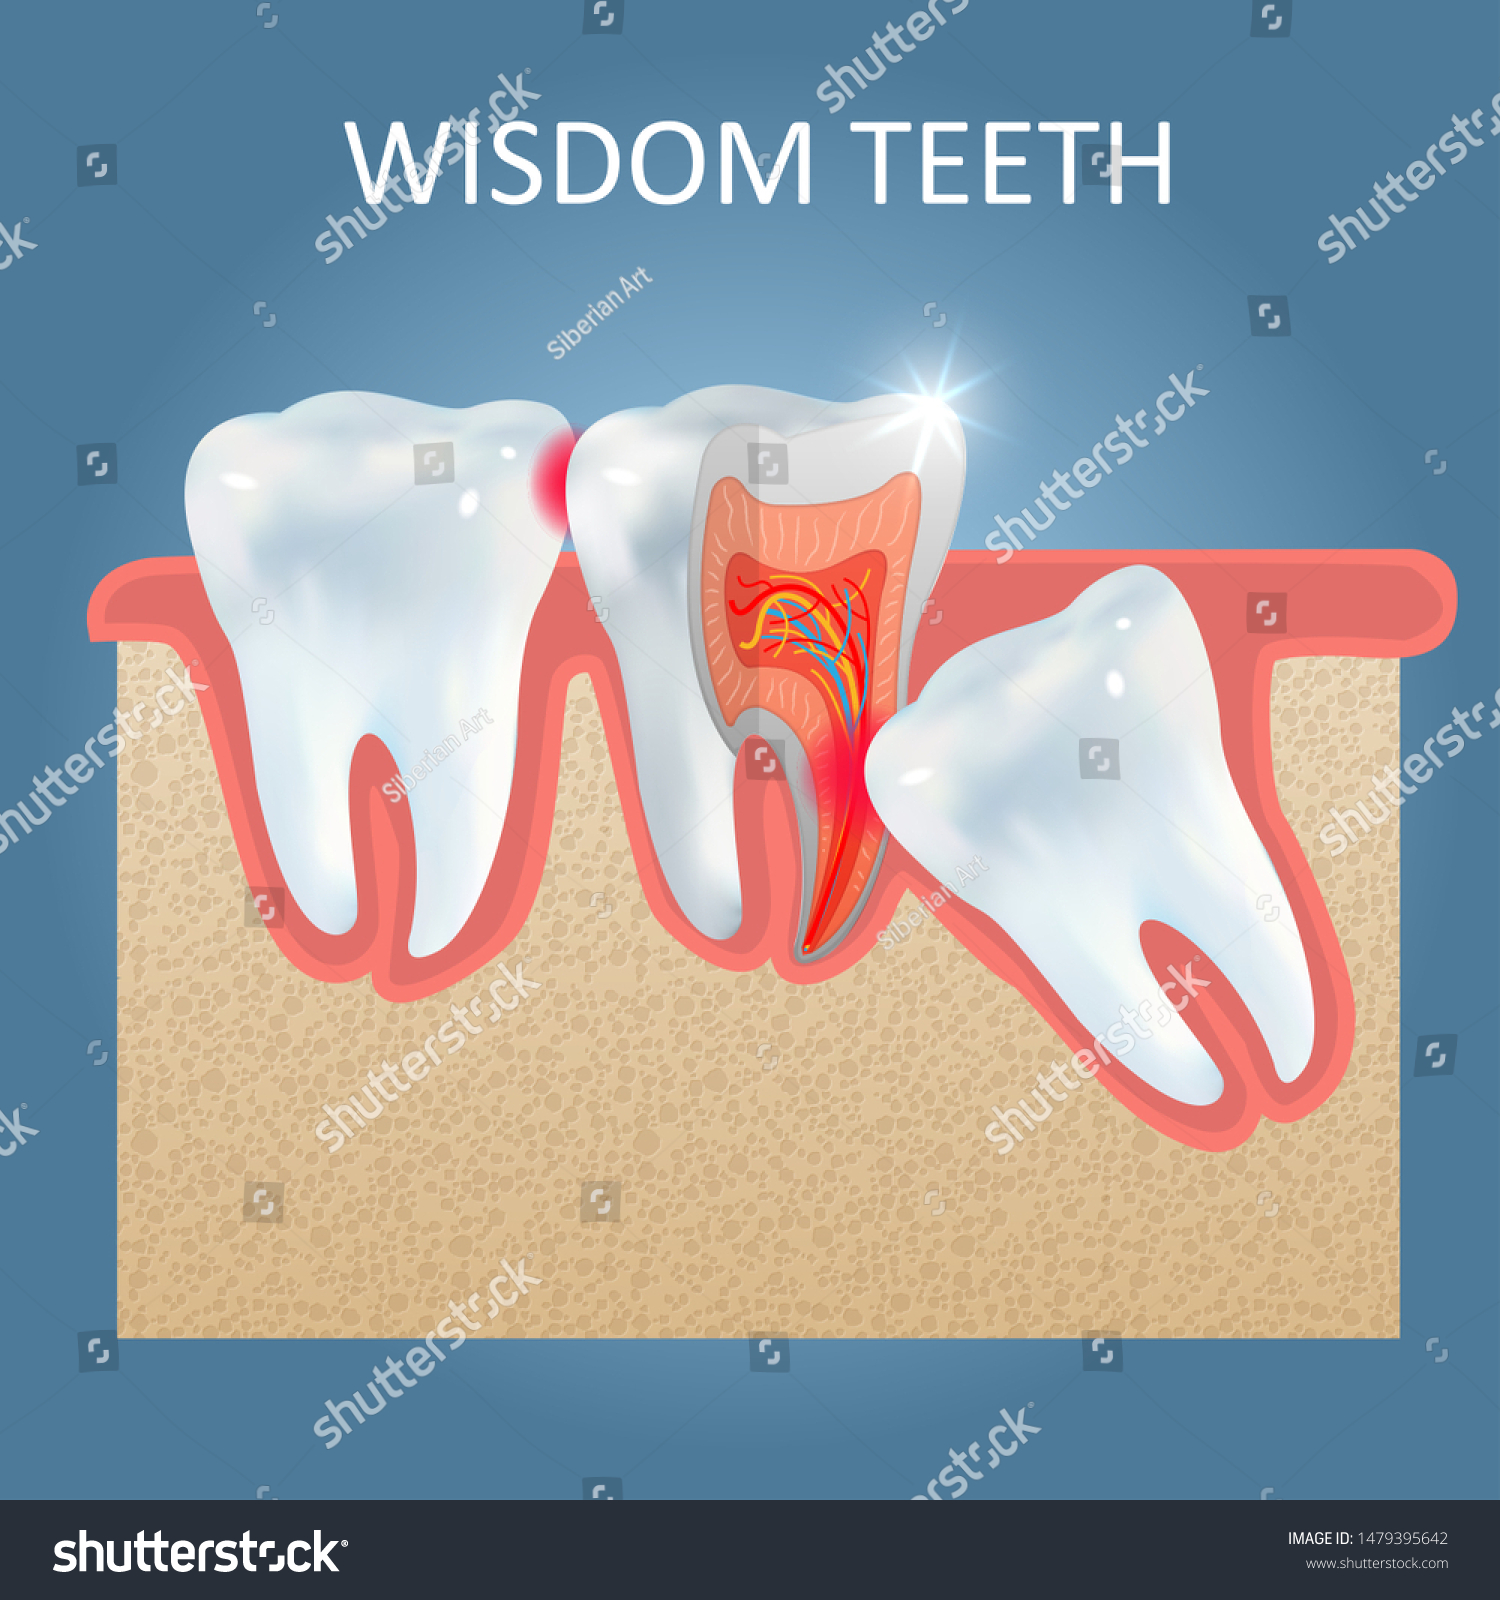 親知らずの歯のポスターテンプレート ベクターリアルイラスト 虫歯や他の歯のう蝕など 歯の問題を引き起こす埋伏智歯 歯の健康のコンセプト のベクター画像素材 ロイヤリティフリー